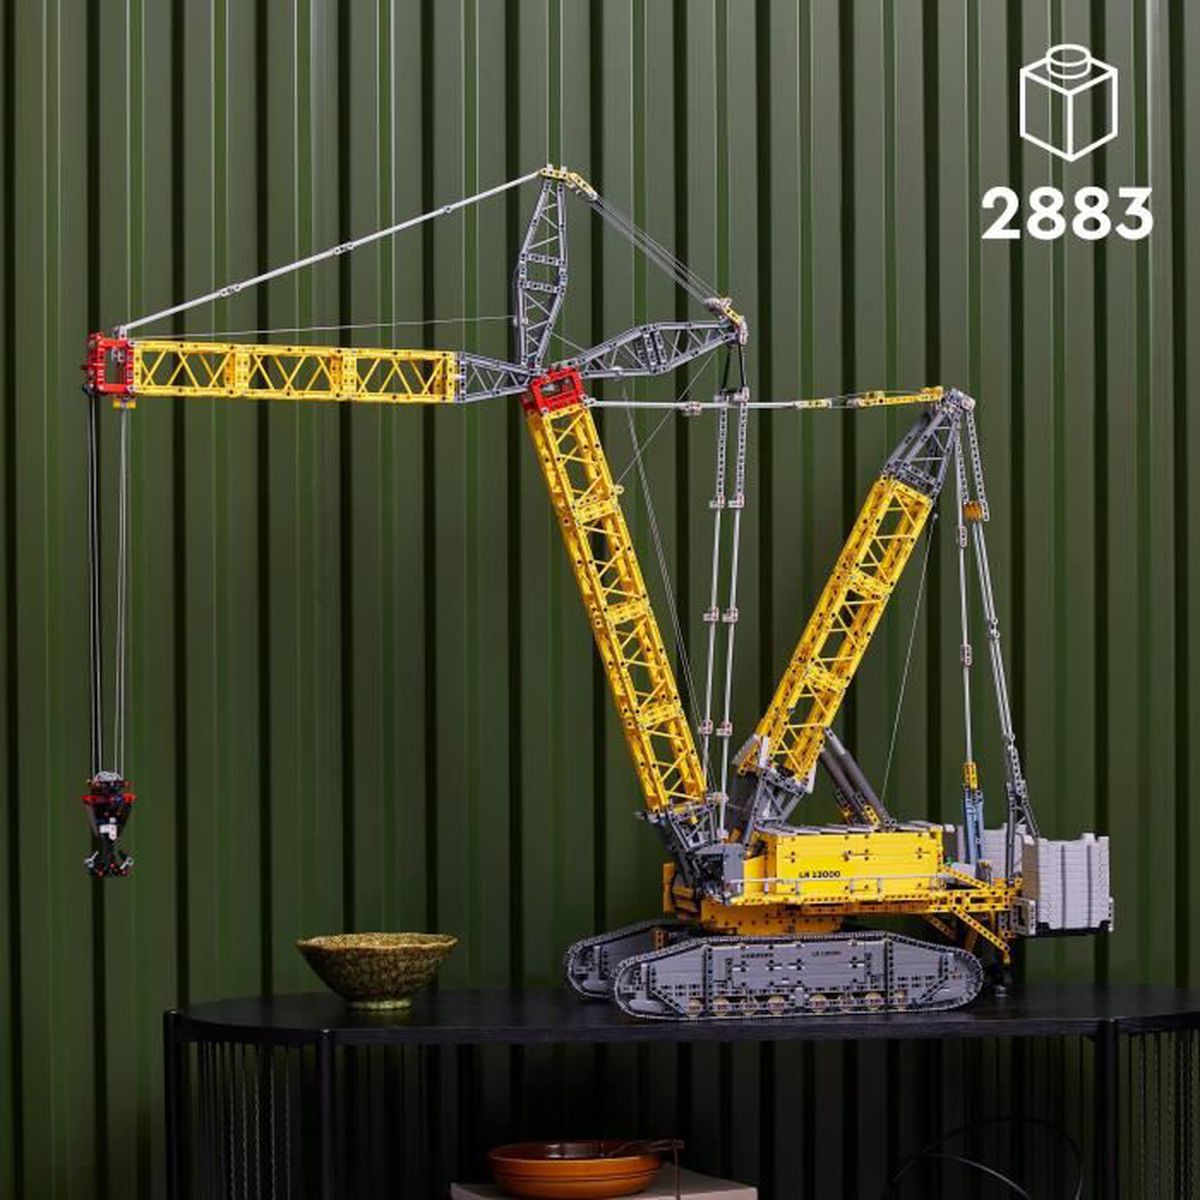 Lego Technic 42082 Конструктор Подъёмный кран для пересечённой местности